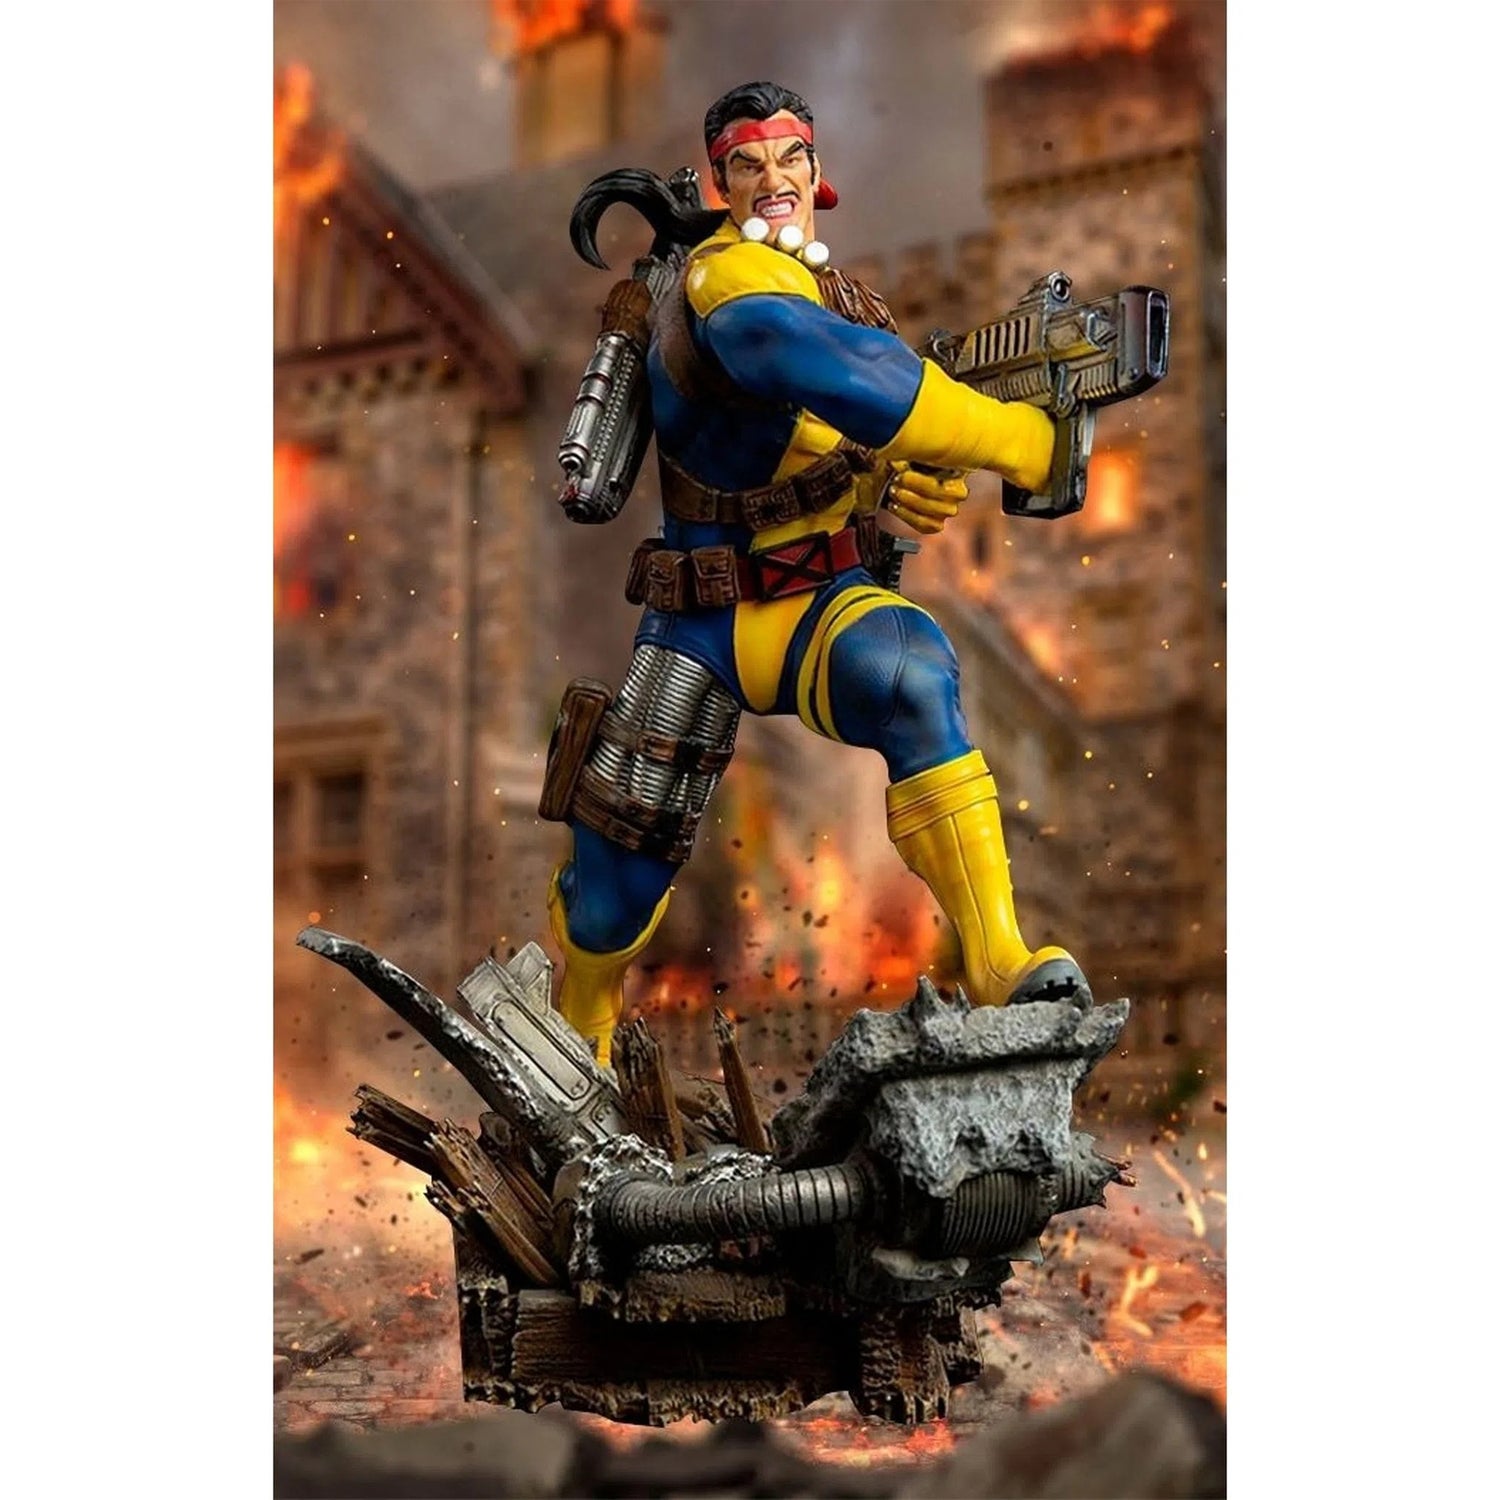 Iron Studios Forge BDS X-Men Marvel Comics Art Scale 1/10 Collectible Statue (22cm)